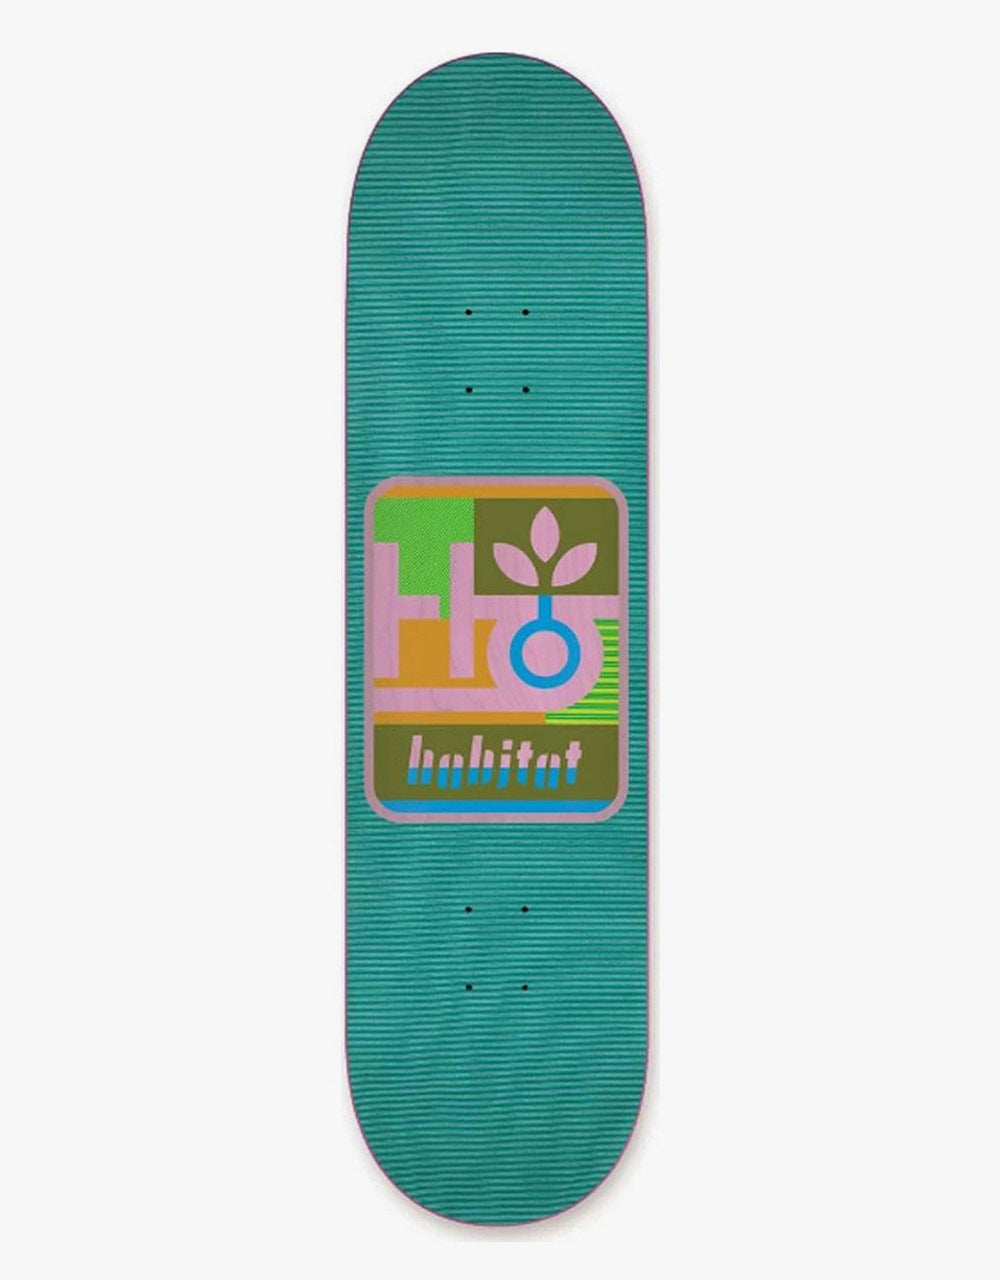 Habitat Mod Pod Skateboard Deck - 8.25"